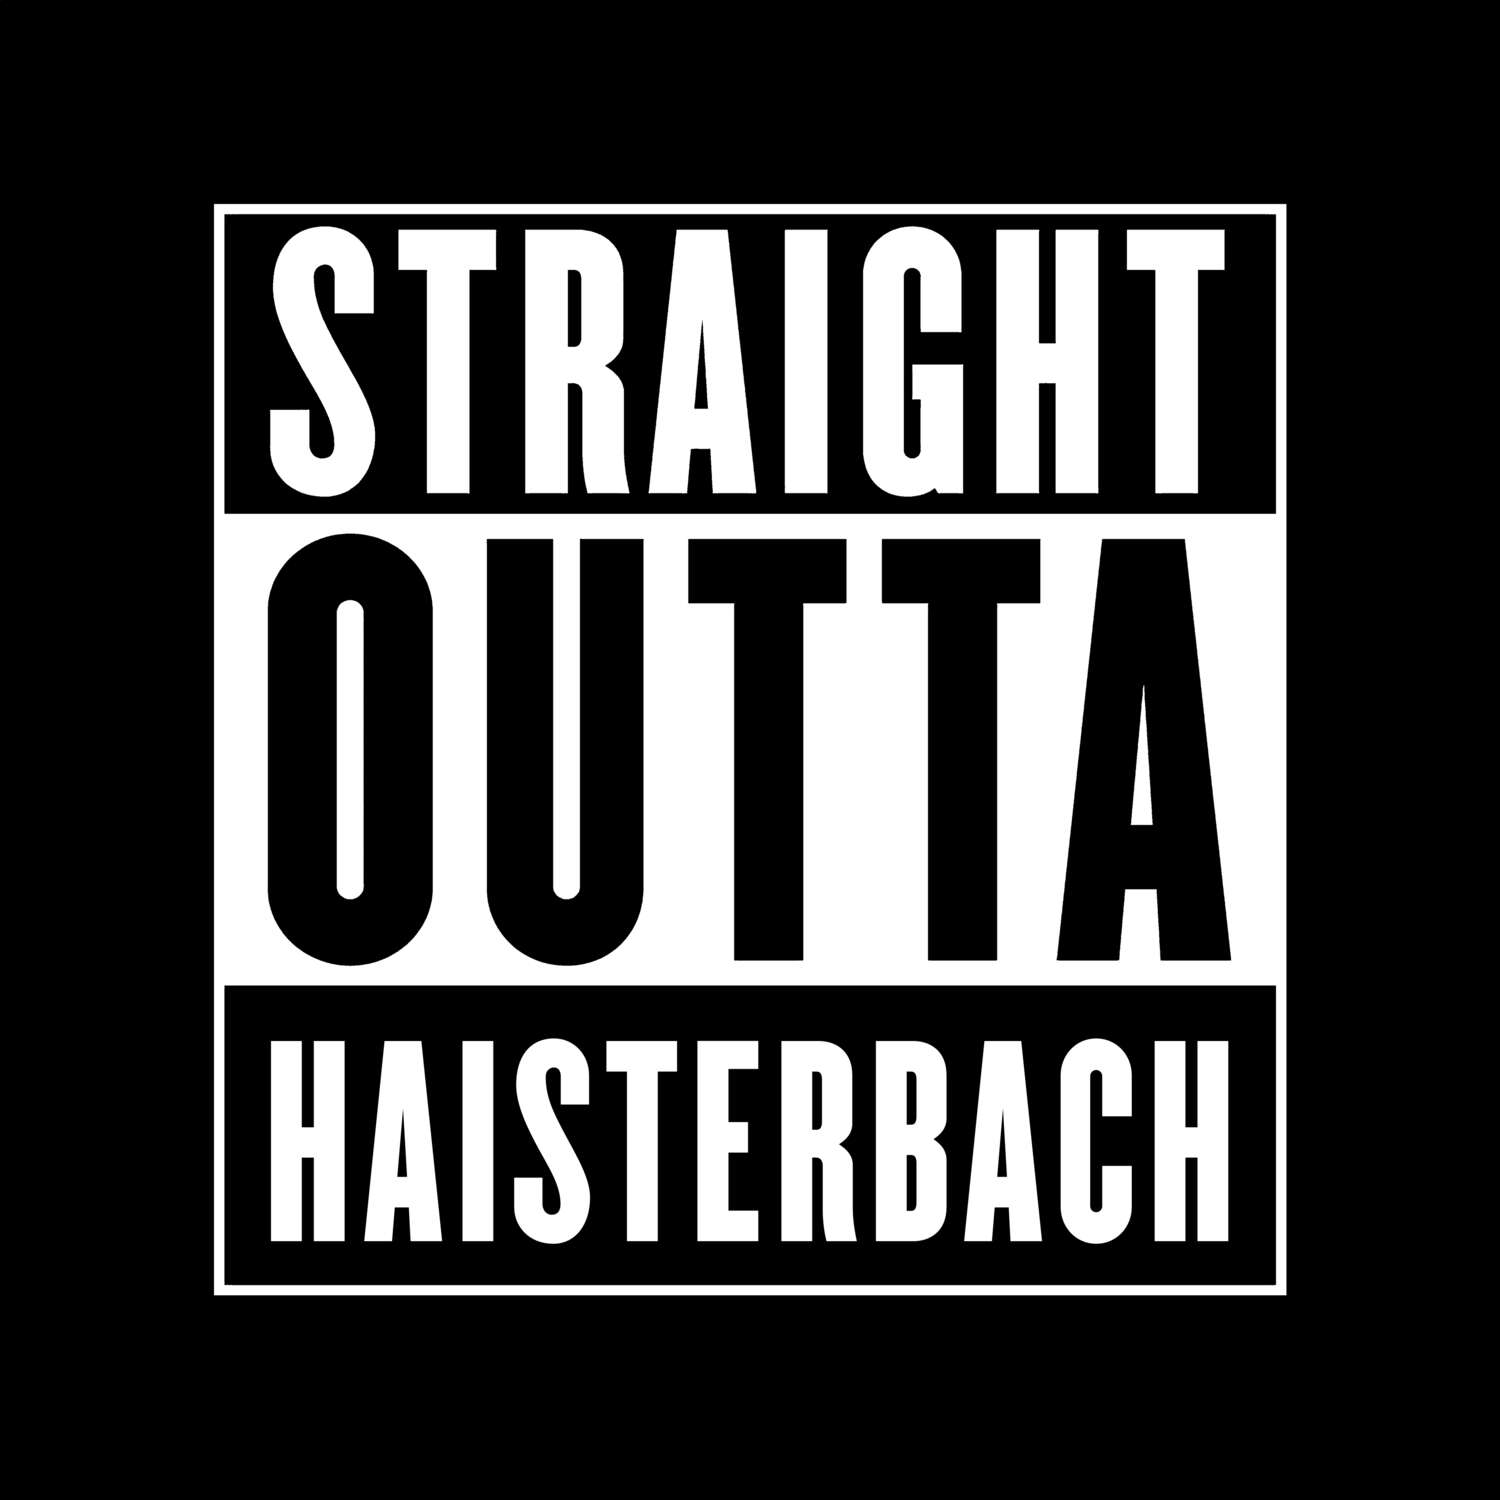 Haisterbach T-Shirt »Straight Outta«